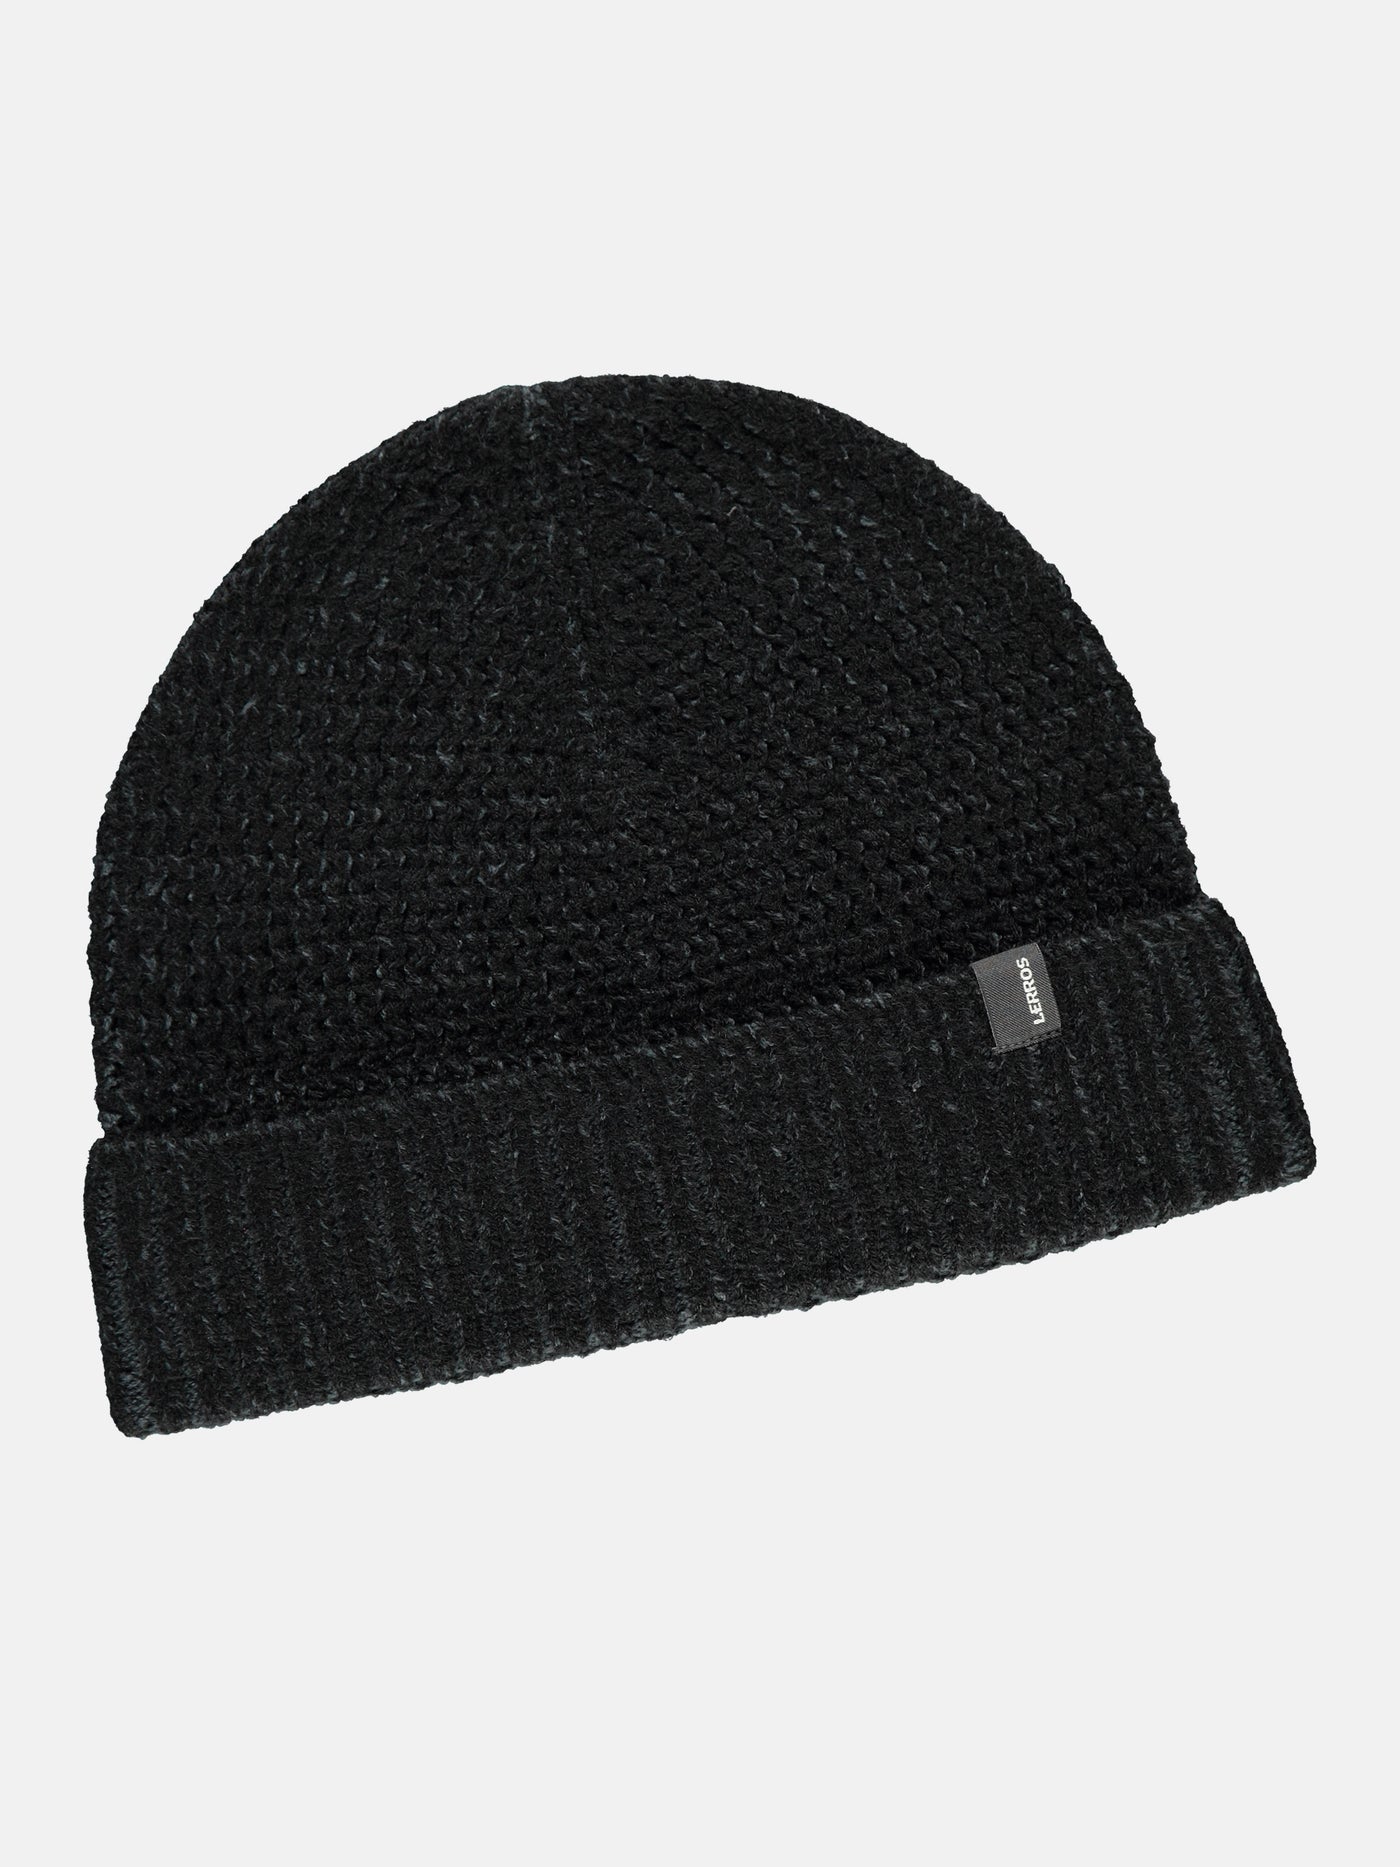 Textured knit hat